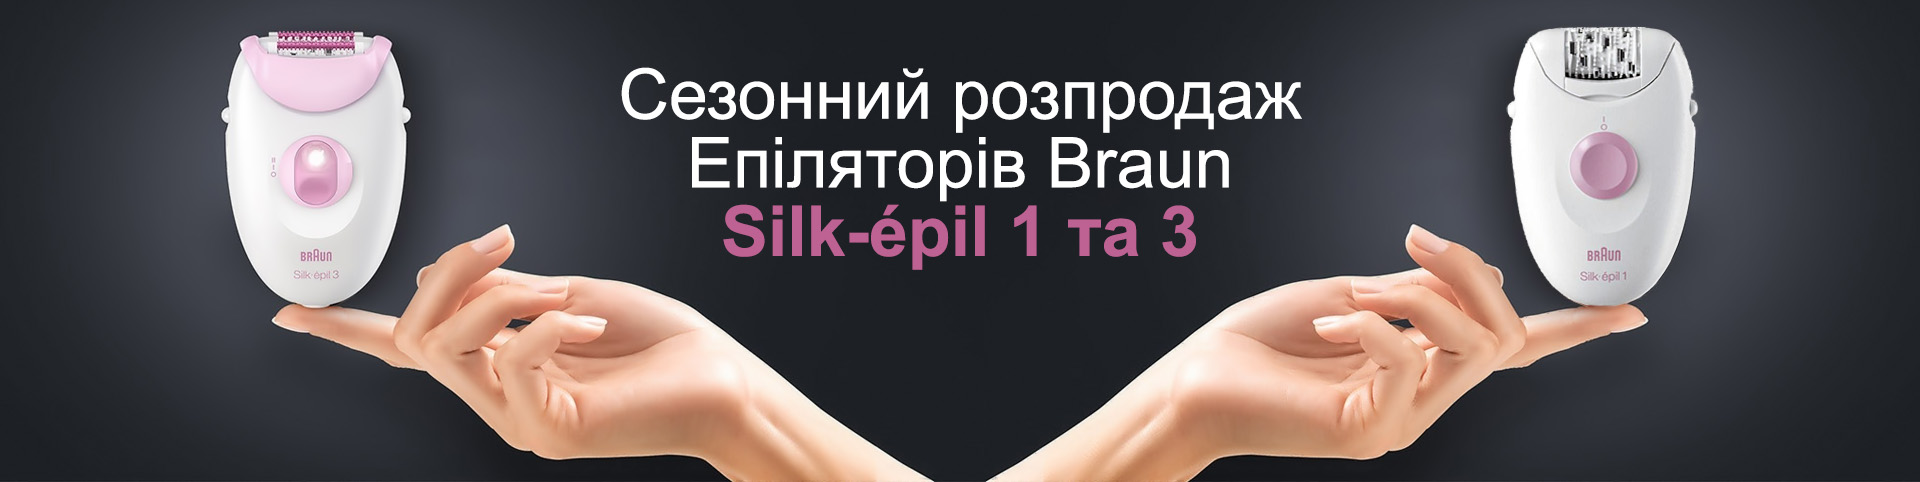 Суперціни на епілятори Braun Silk-epil 1 та 3